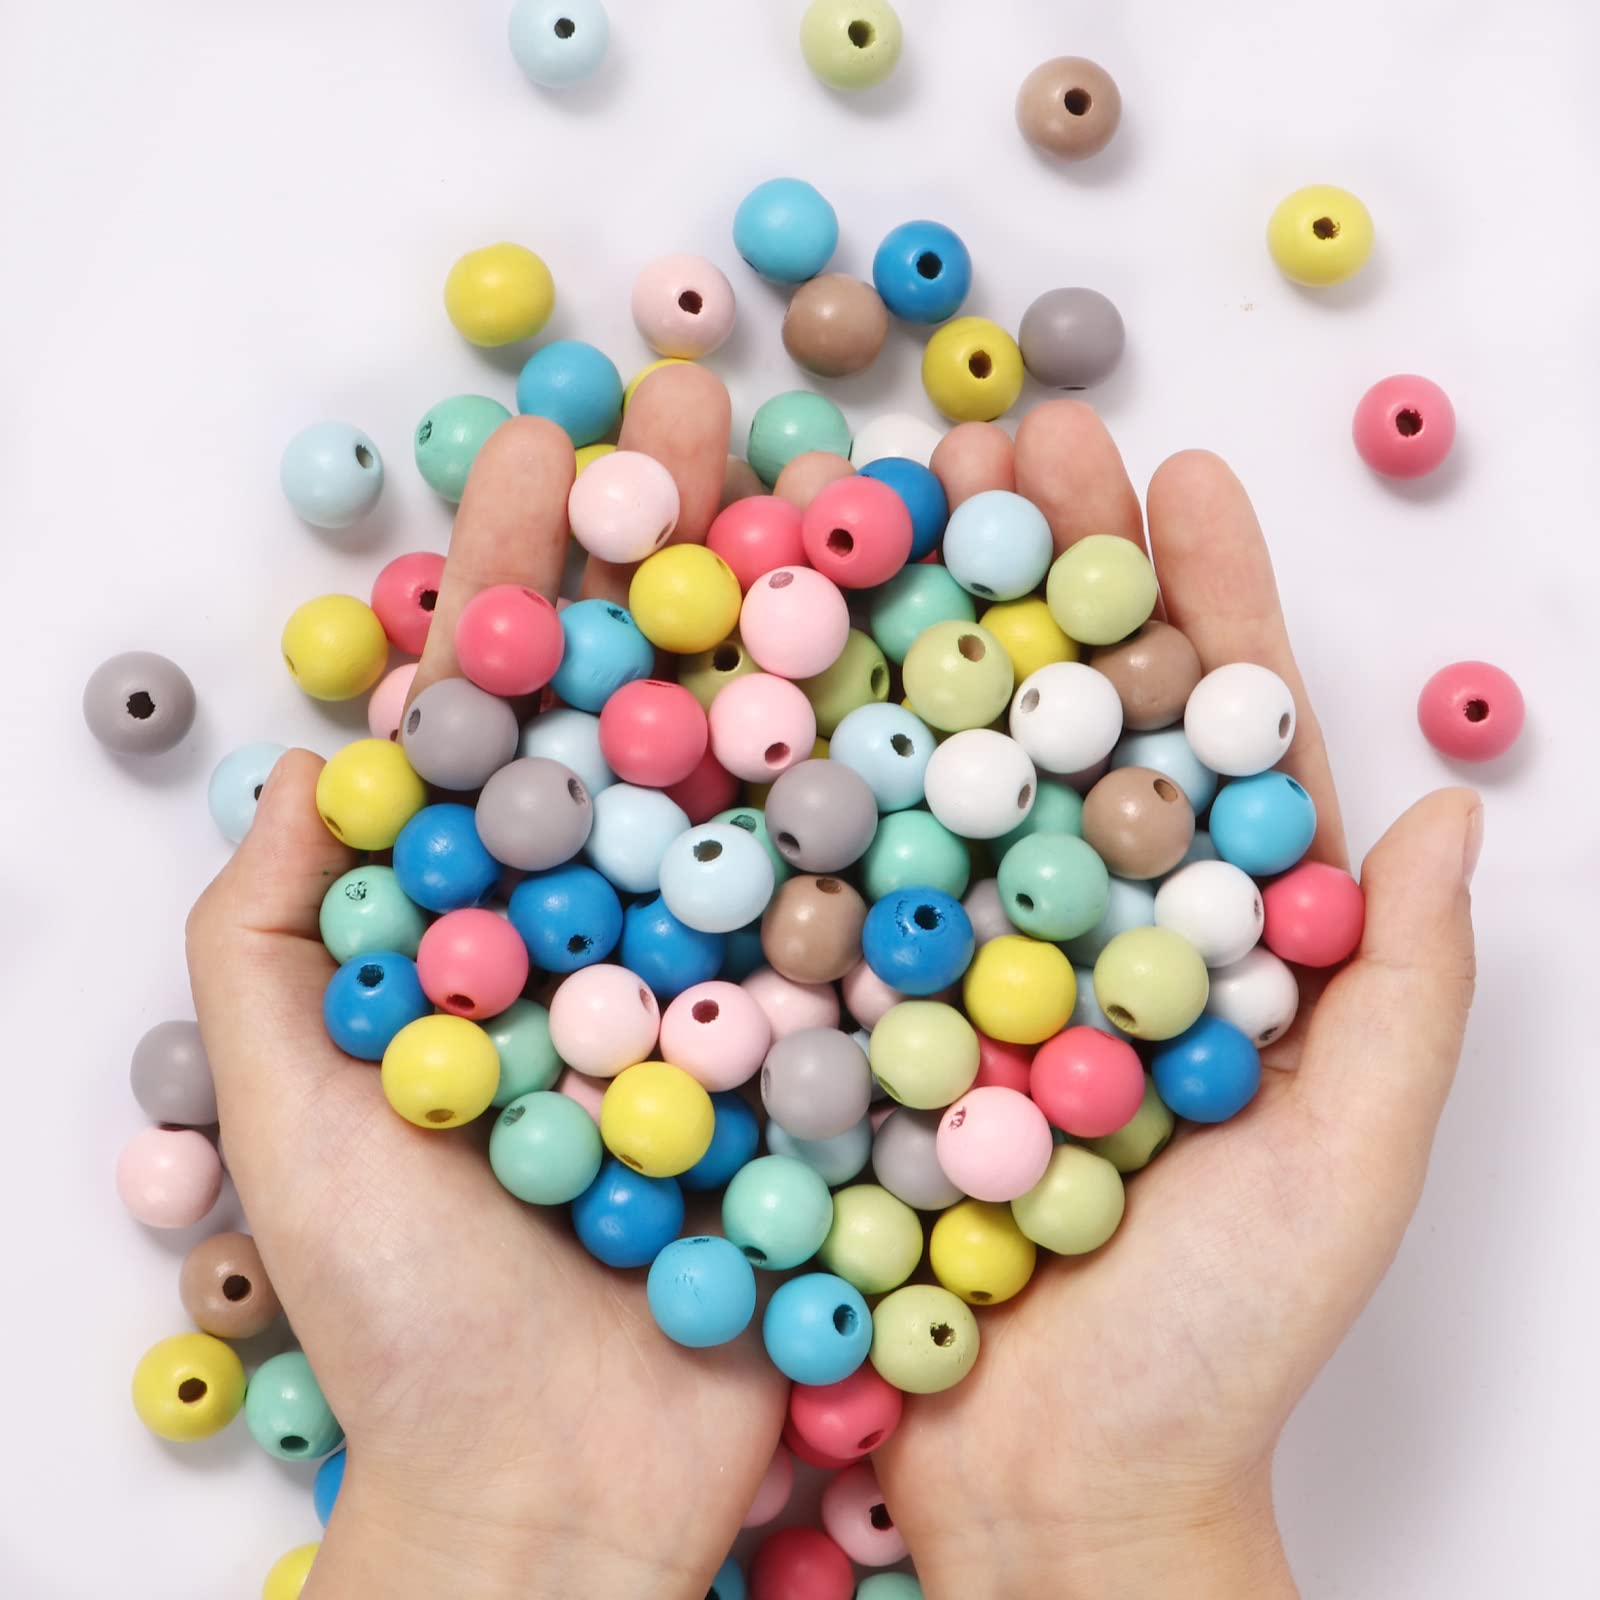 200 pezzi colorati in legno con perle in legno naturale rotonde da 8 mm perle sciolte perle di distanziatore in legno in massa.